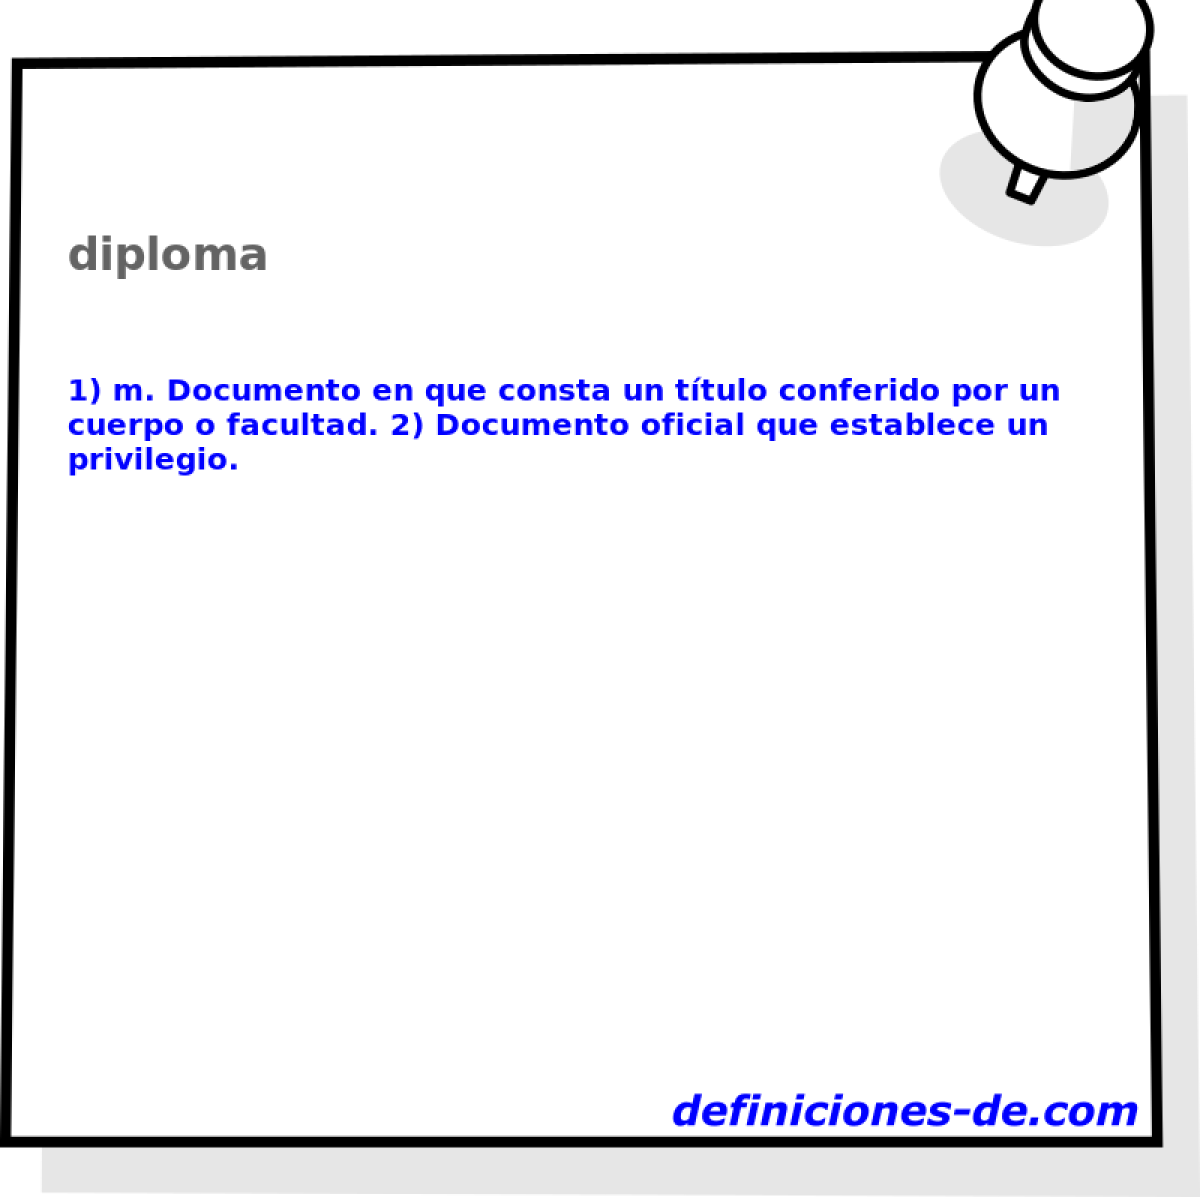 diploma 